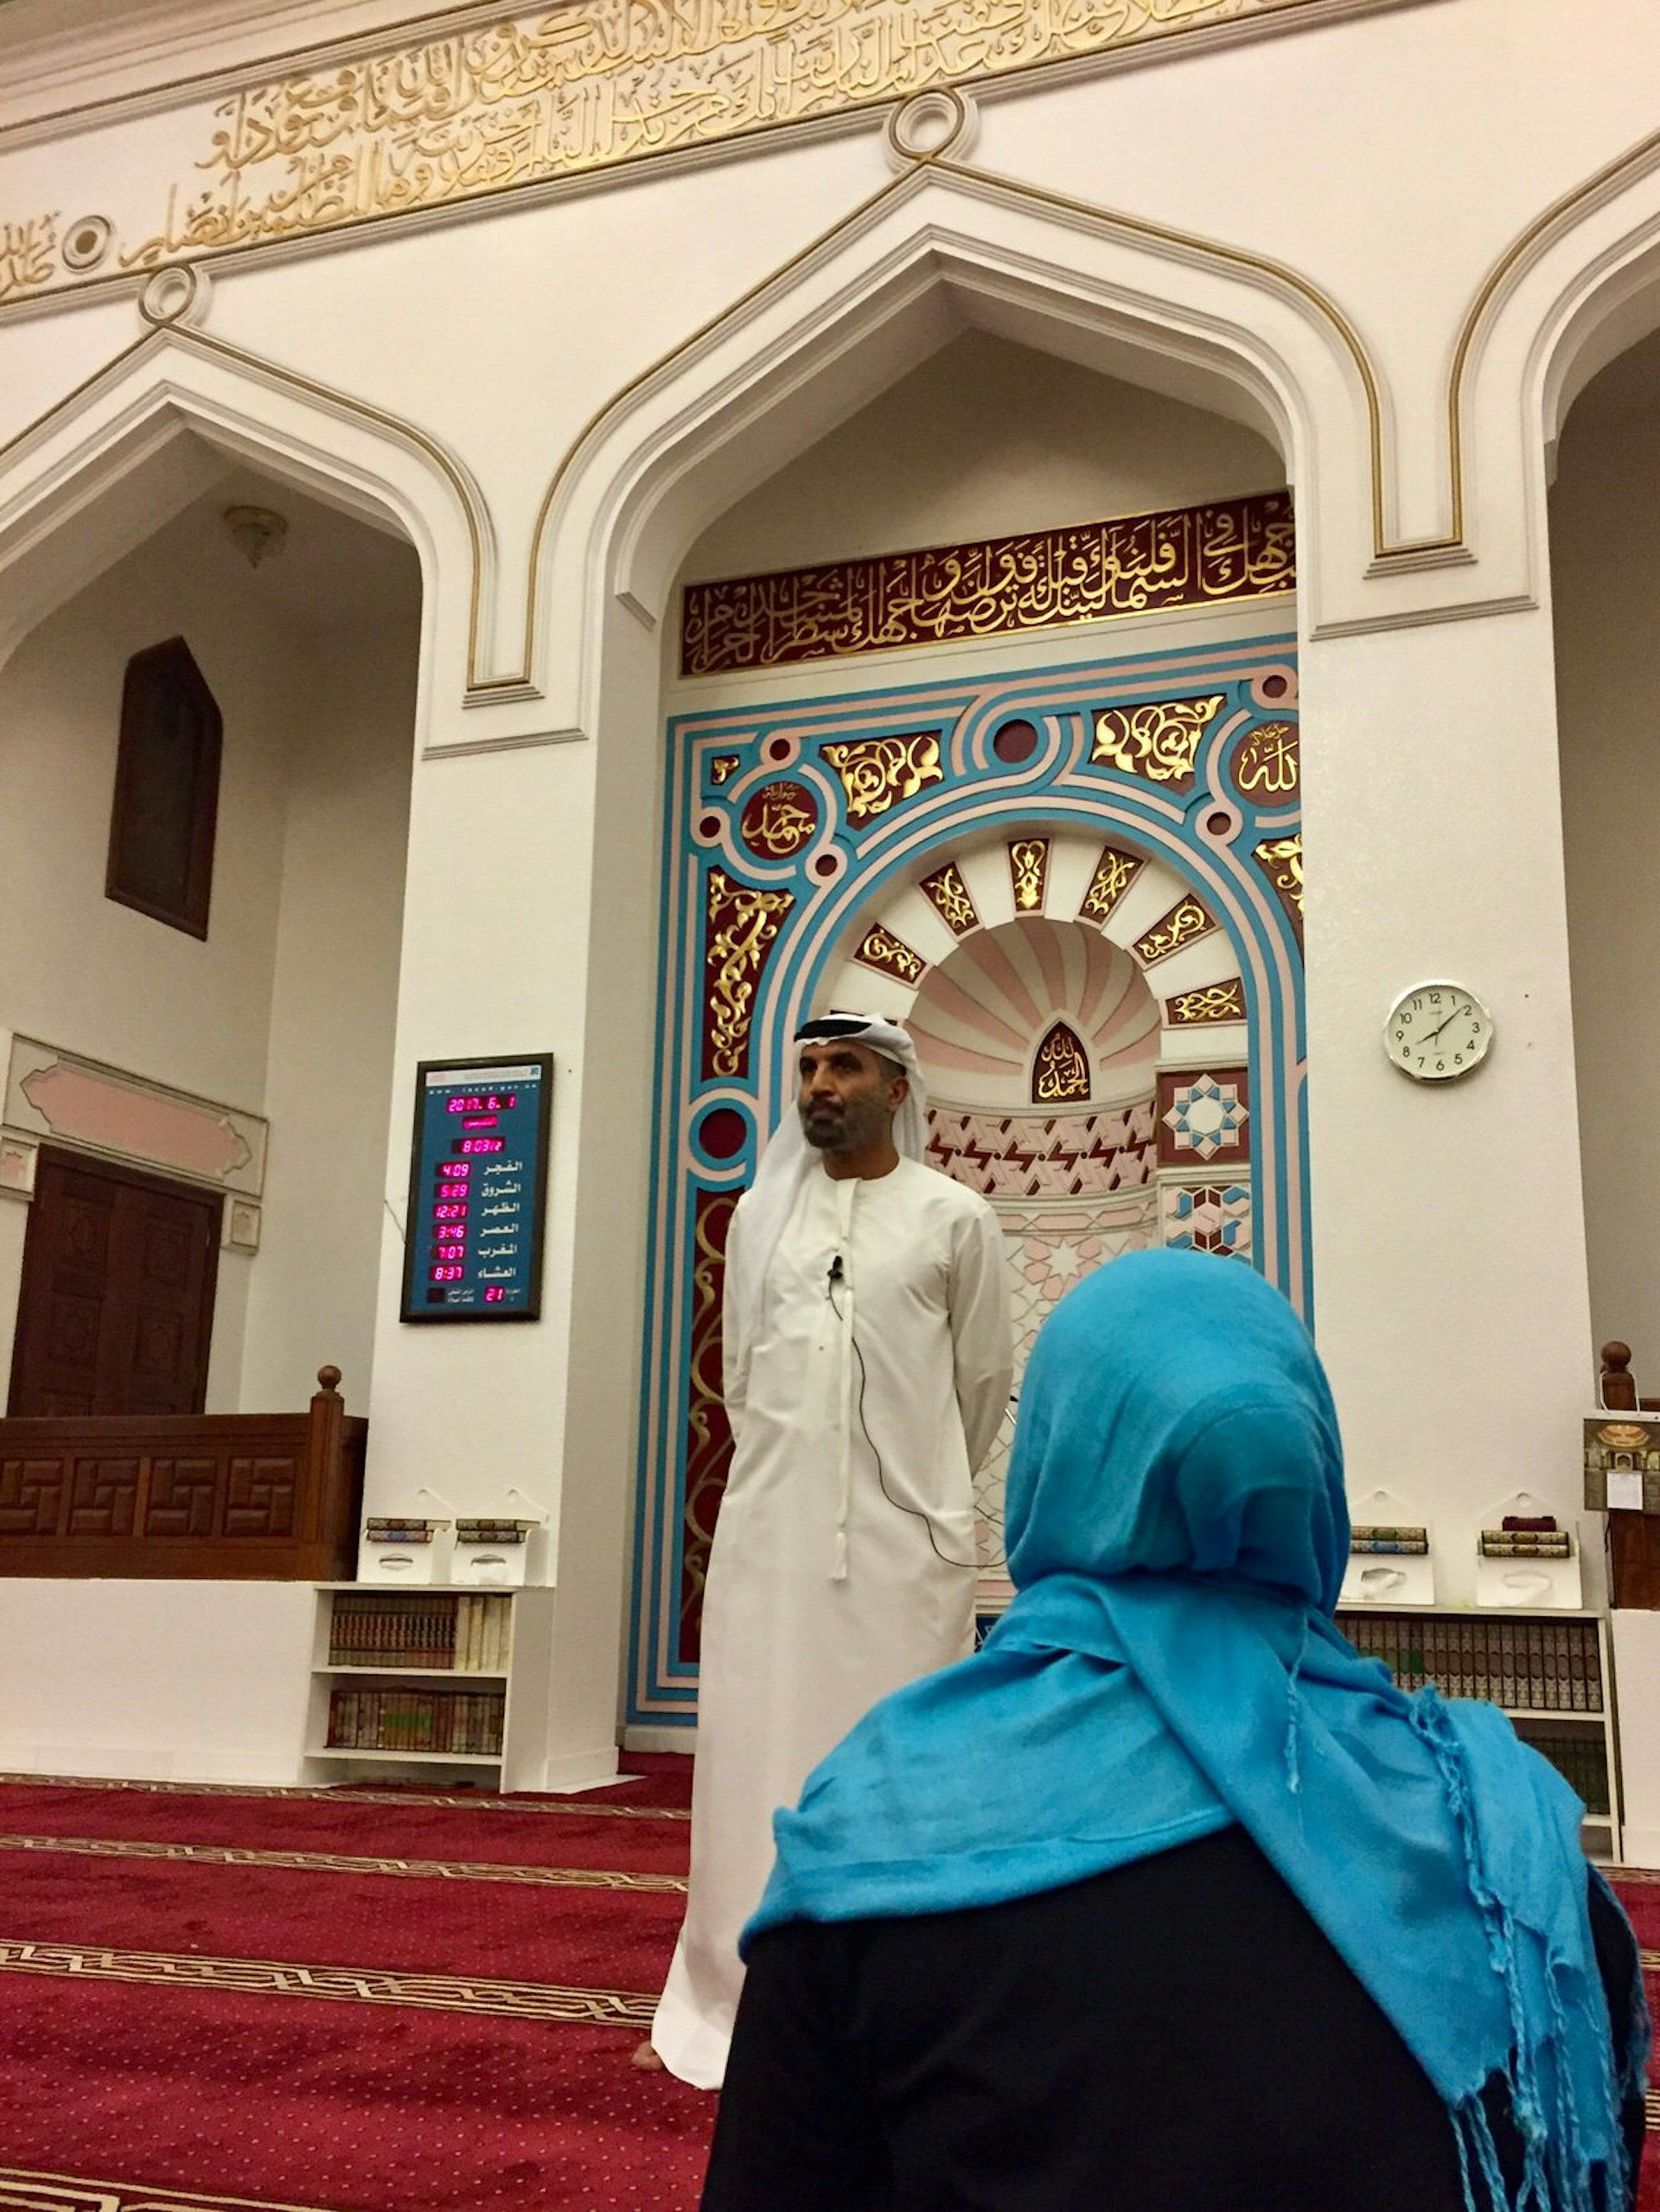 Architectural features of Diwan Mosque, Dubai, United Arab Emirates